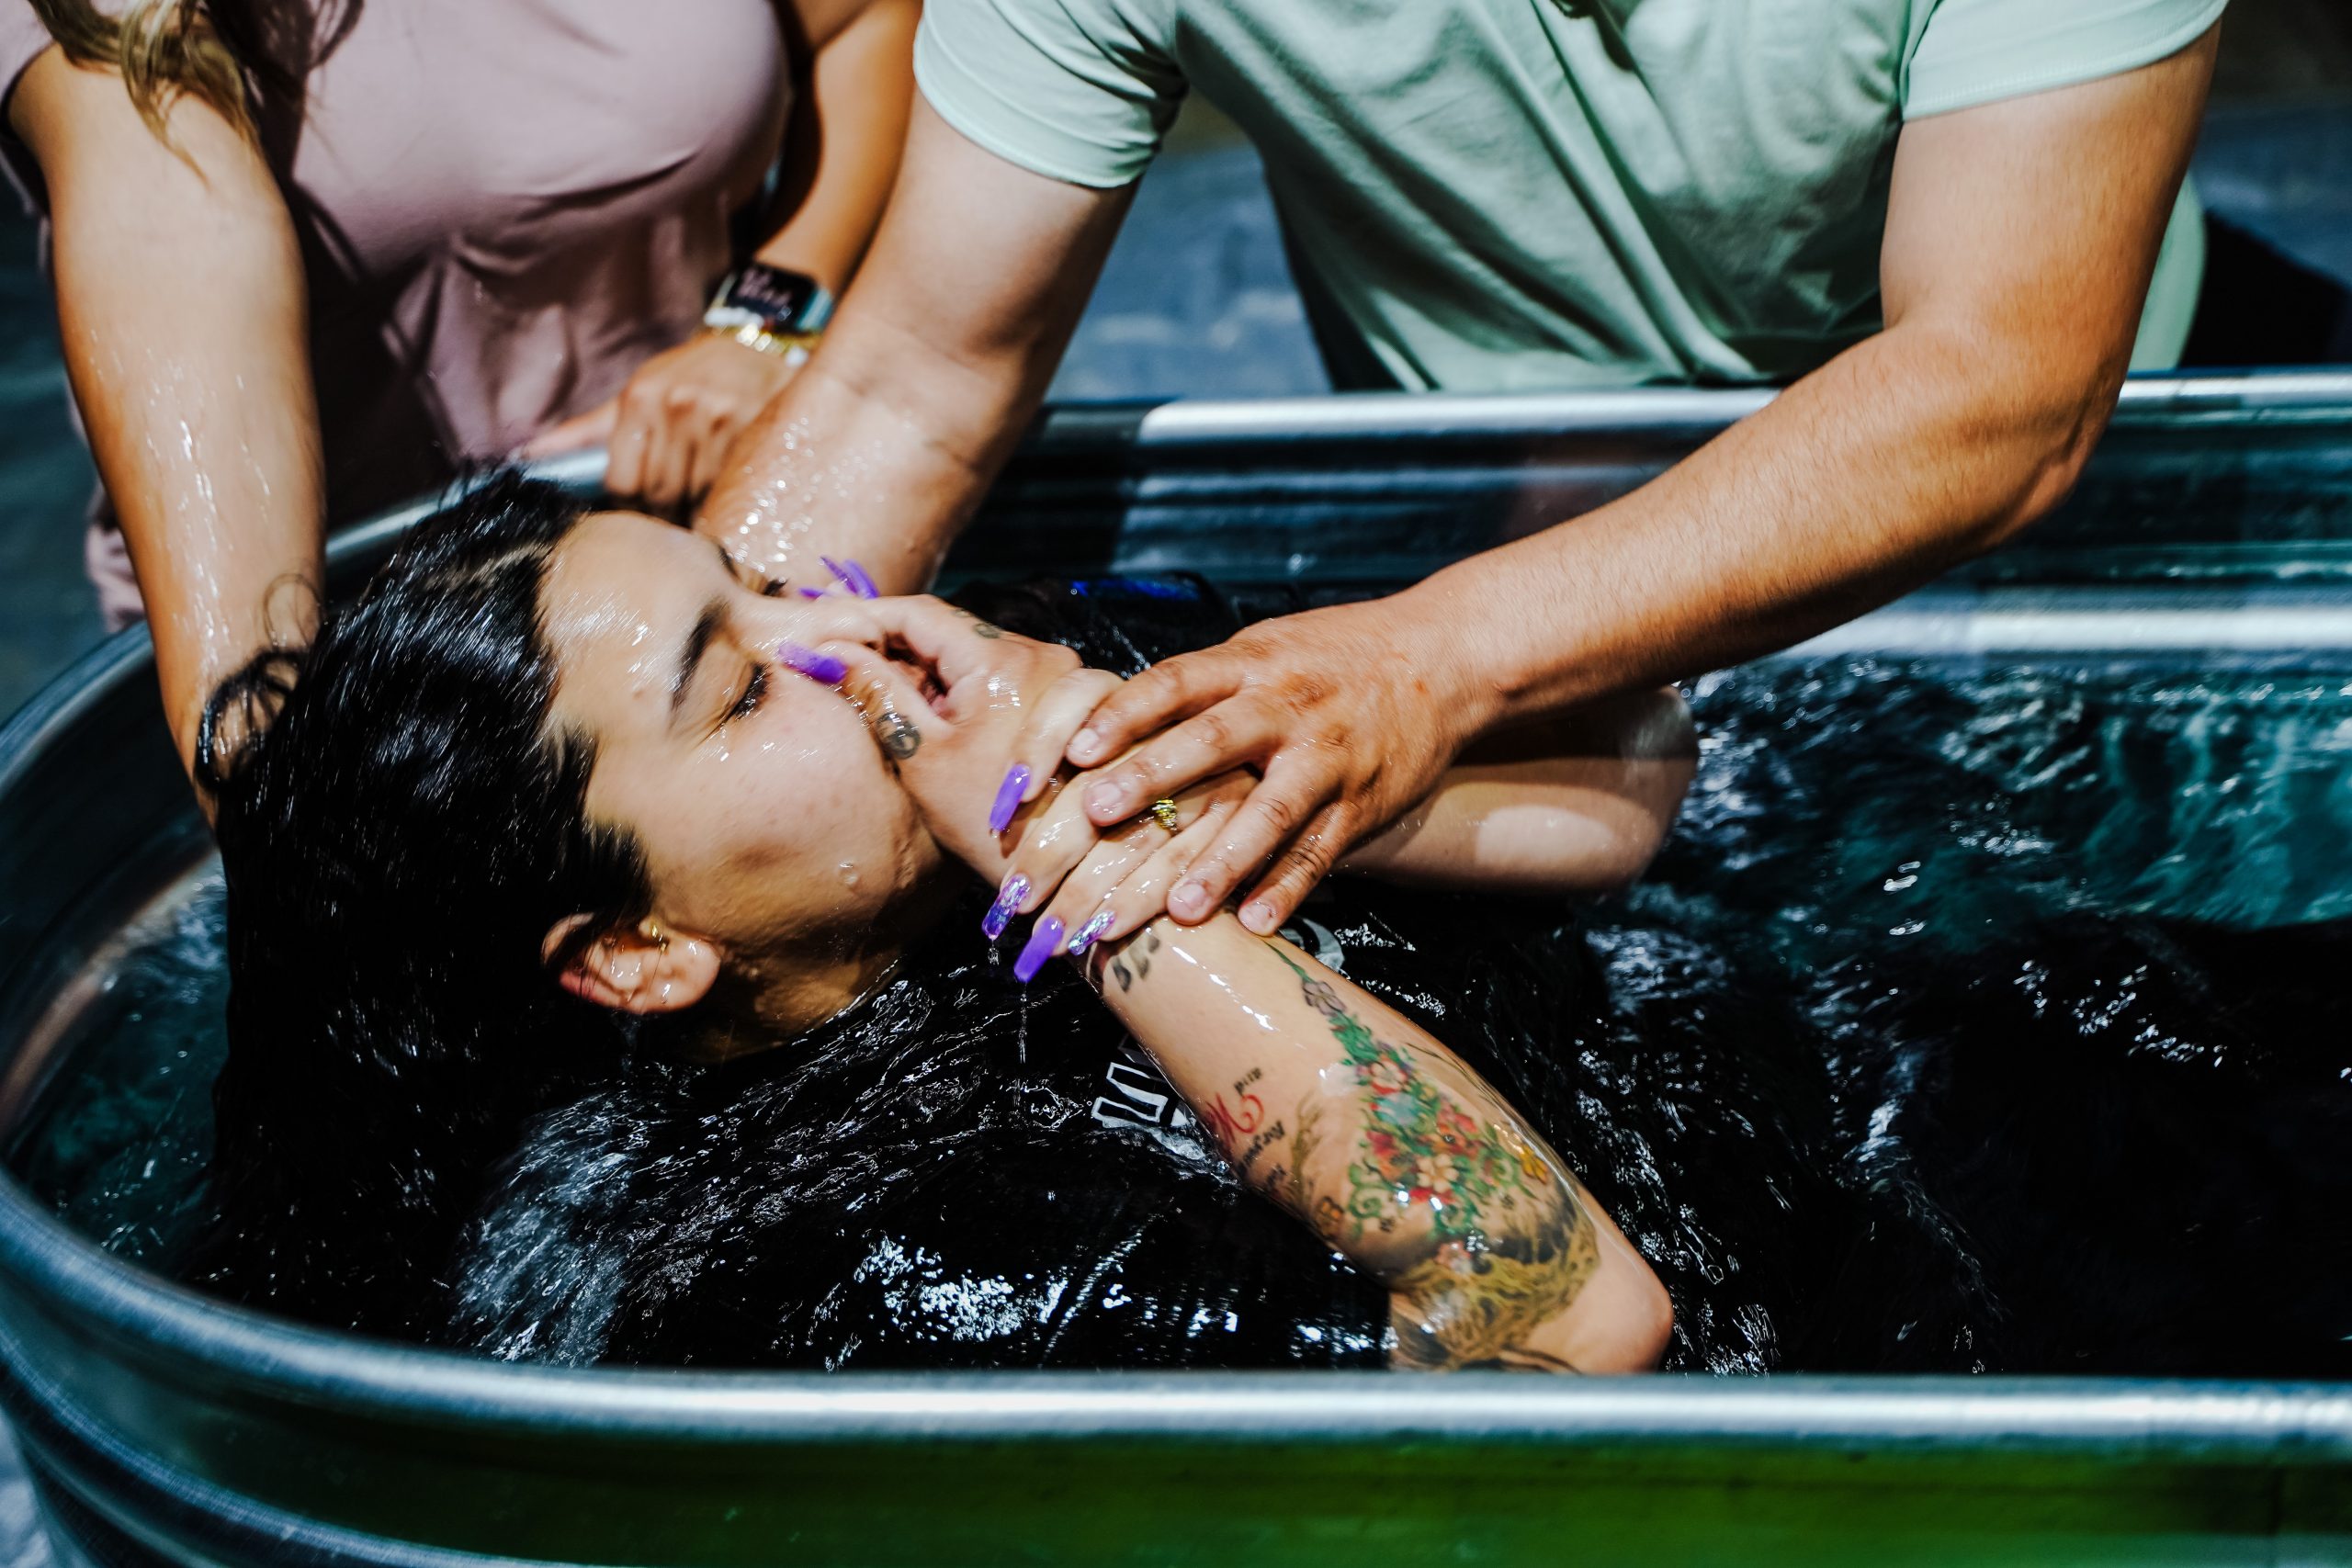 BAPTISM: GOD’S WORK IN US